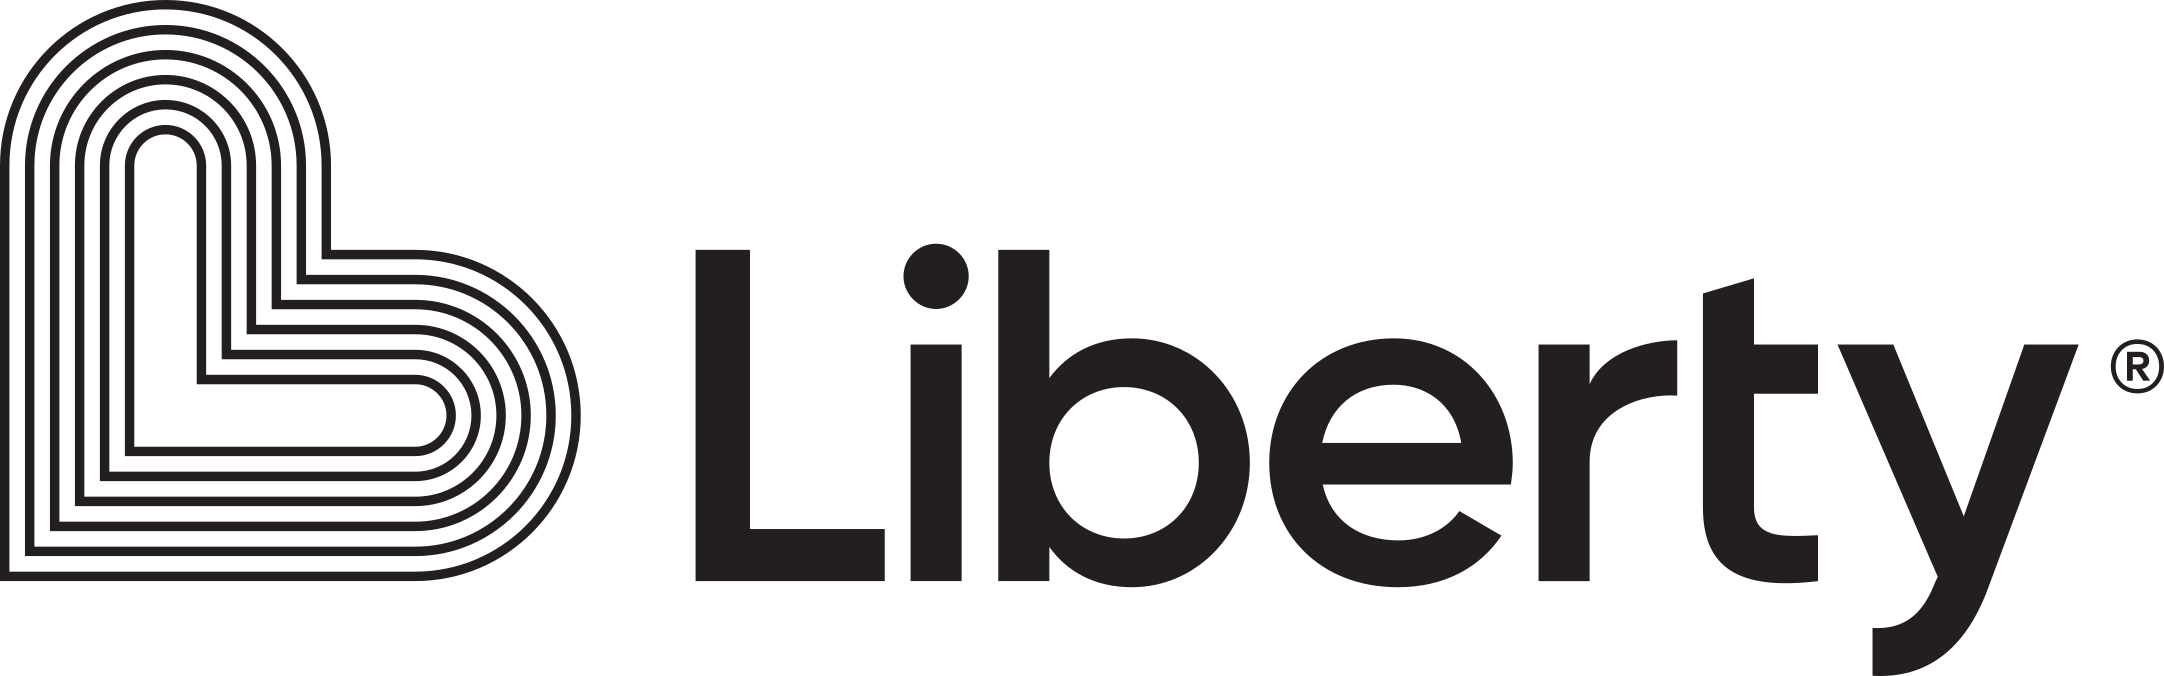 Liberty Utilities logo